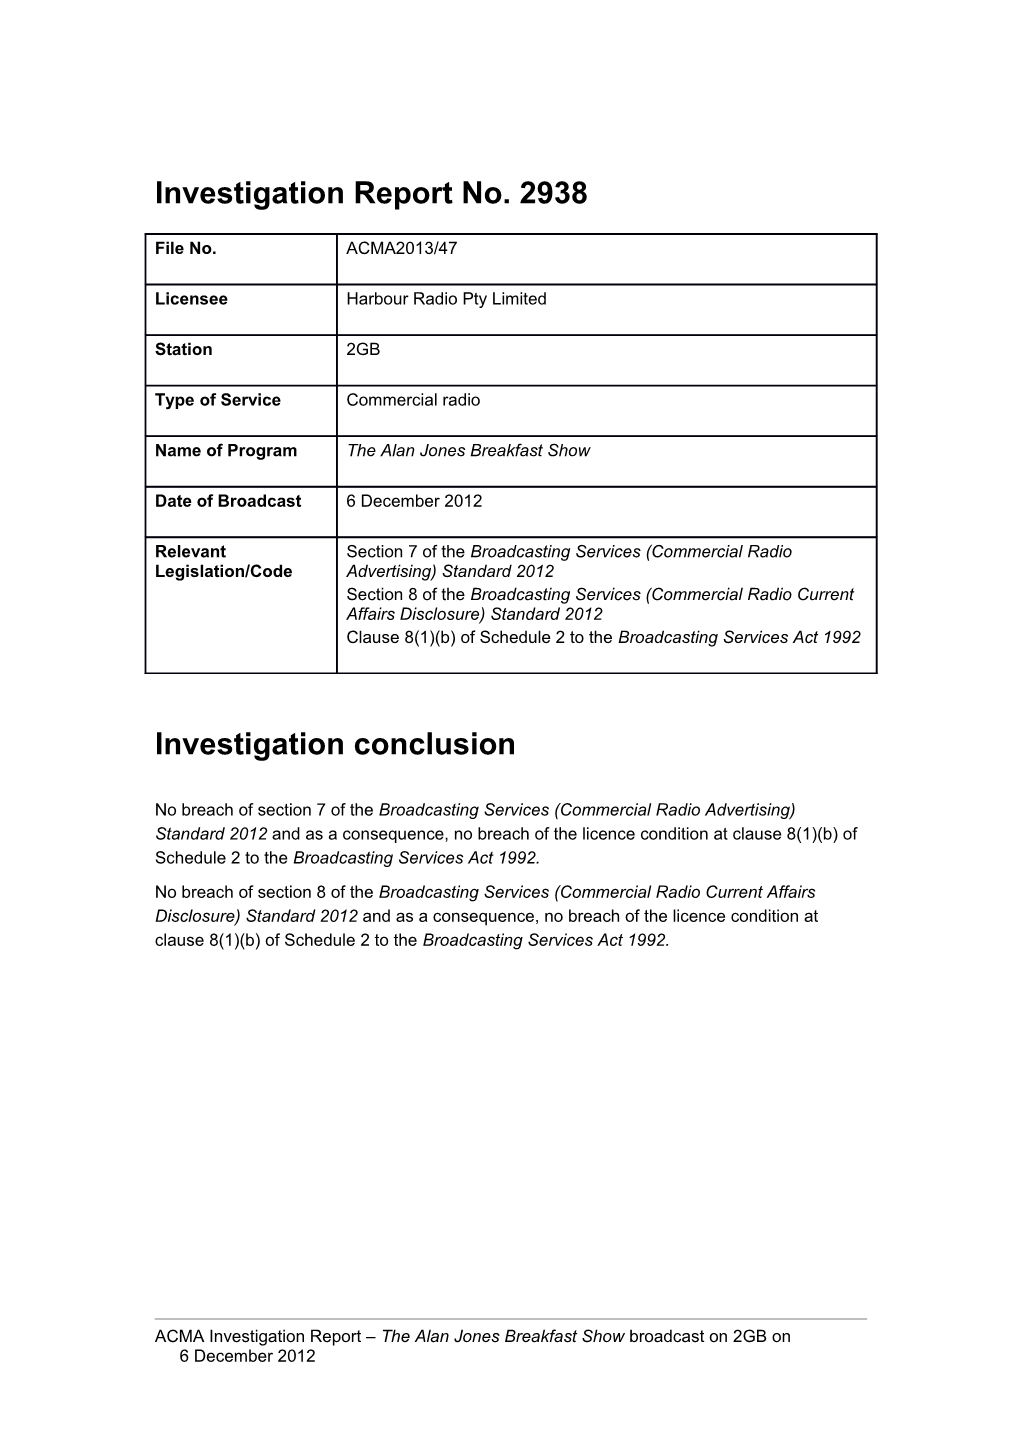 2GB - ACMA Investigation Report 2938